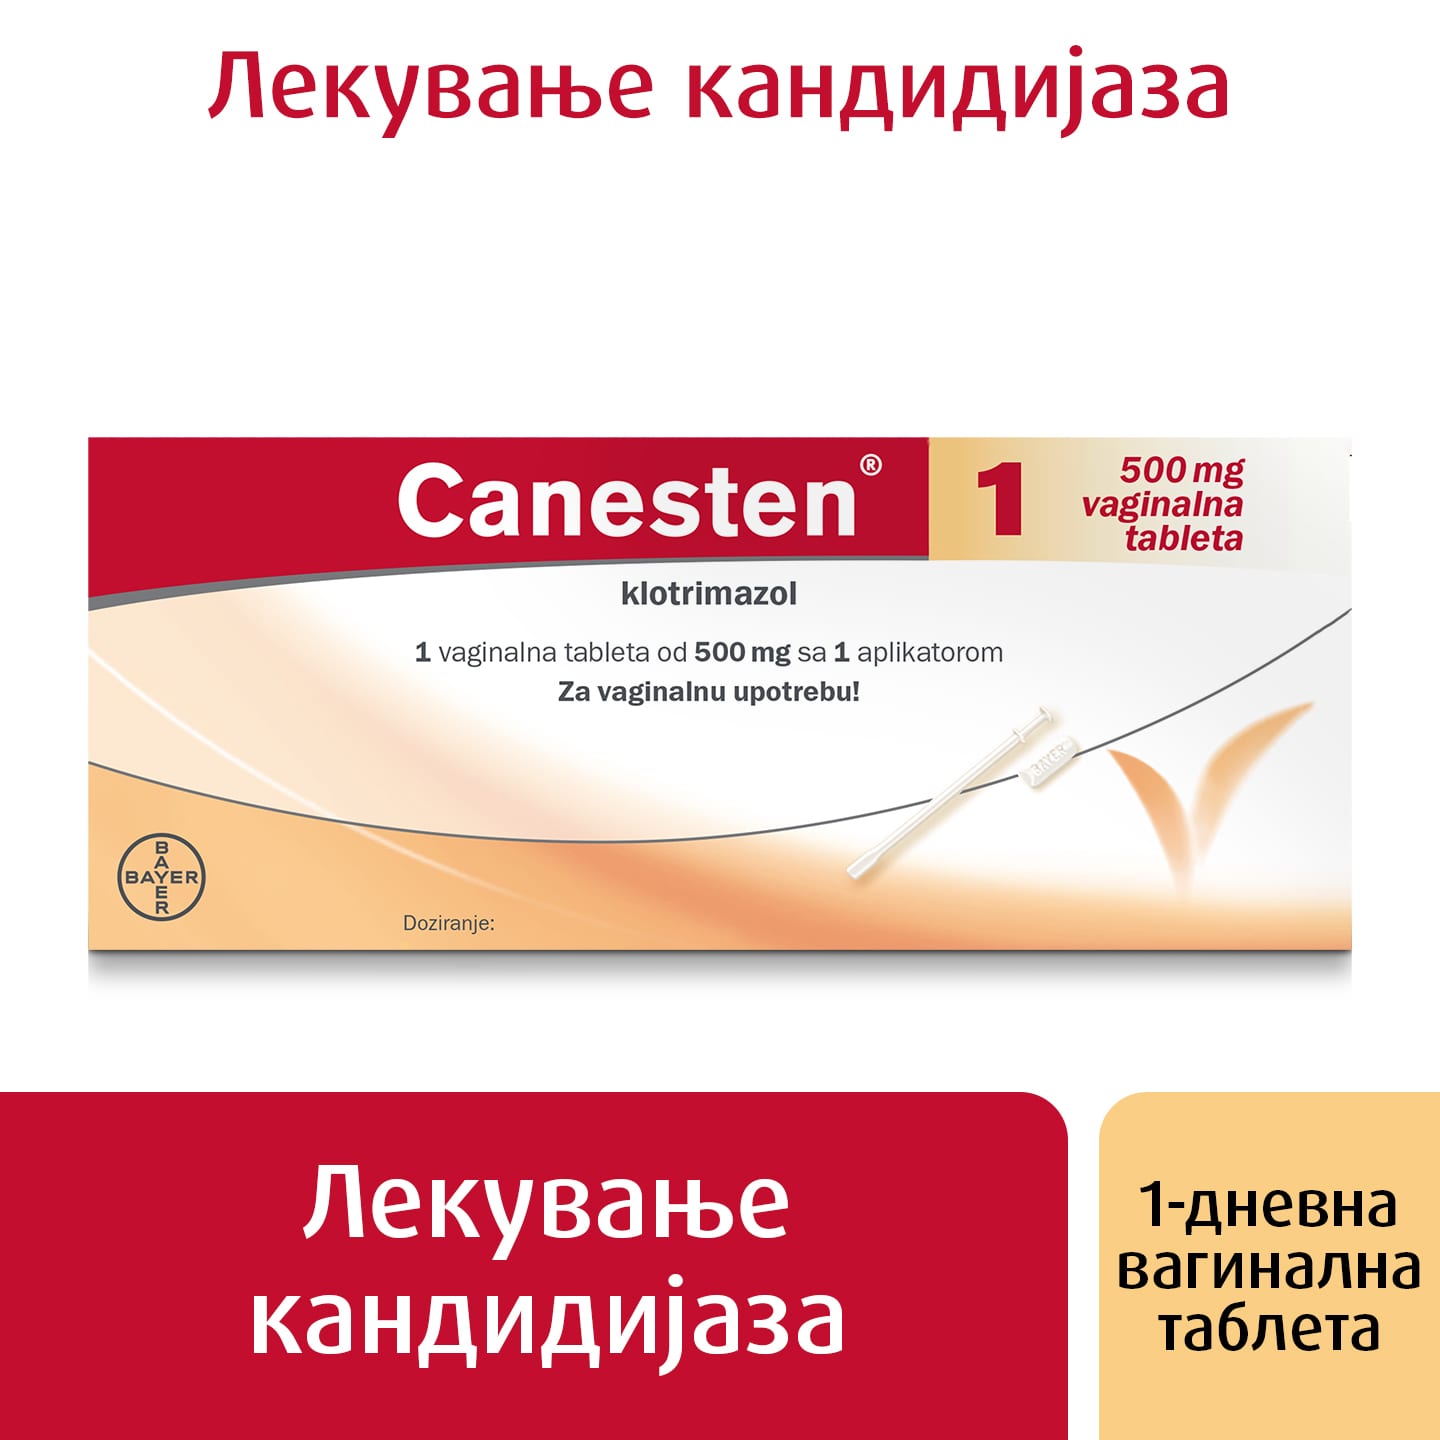 Лекување на кандидијаза, таблета за 1 ден: Канестен® 1 вагинална таблета